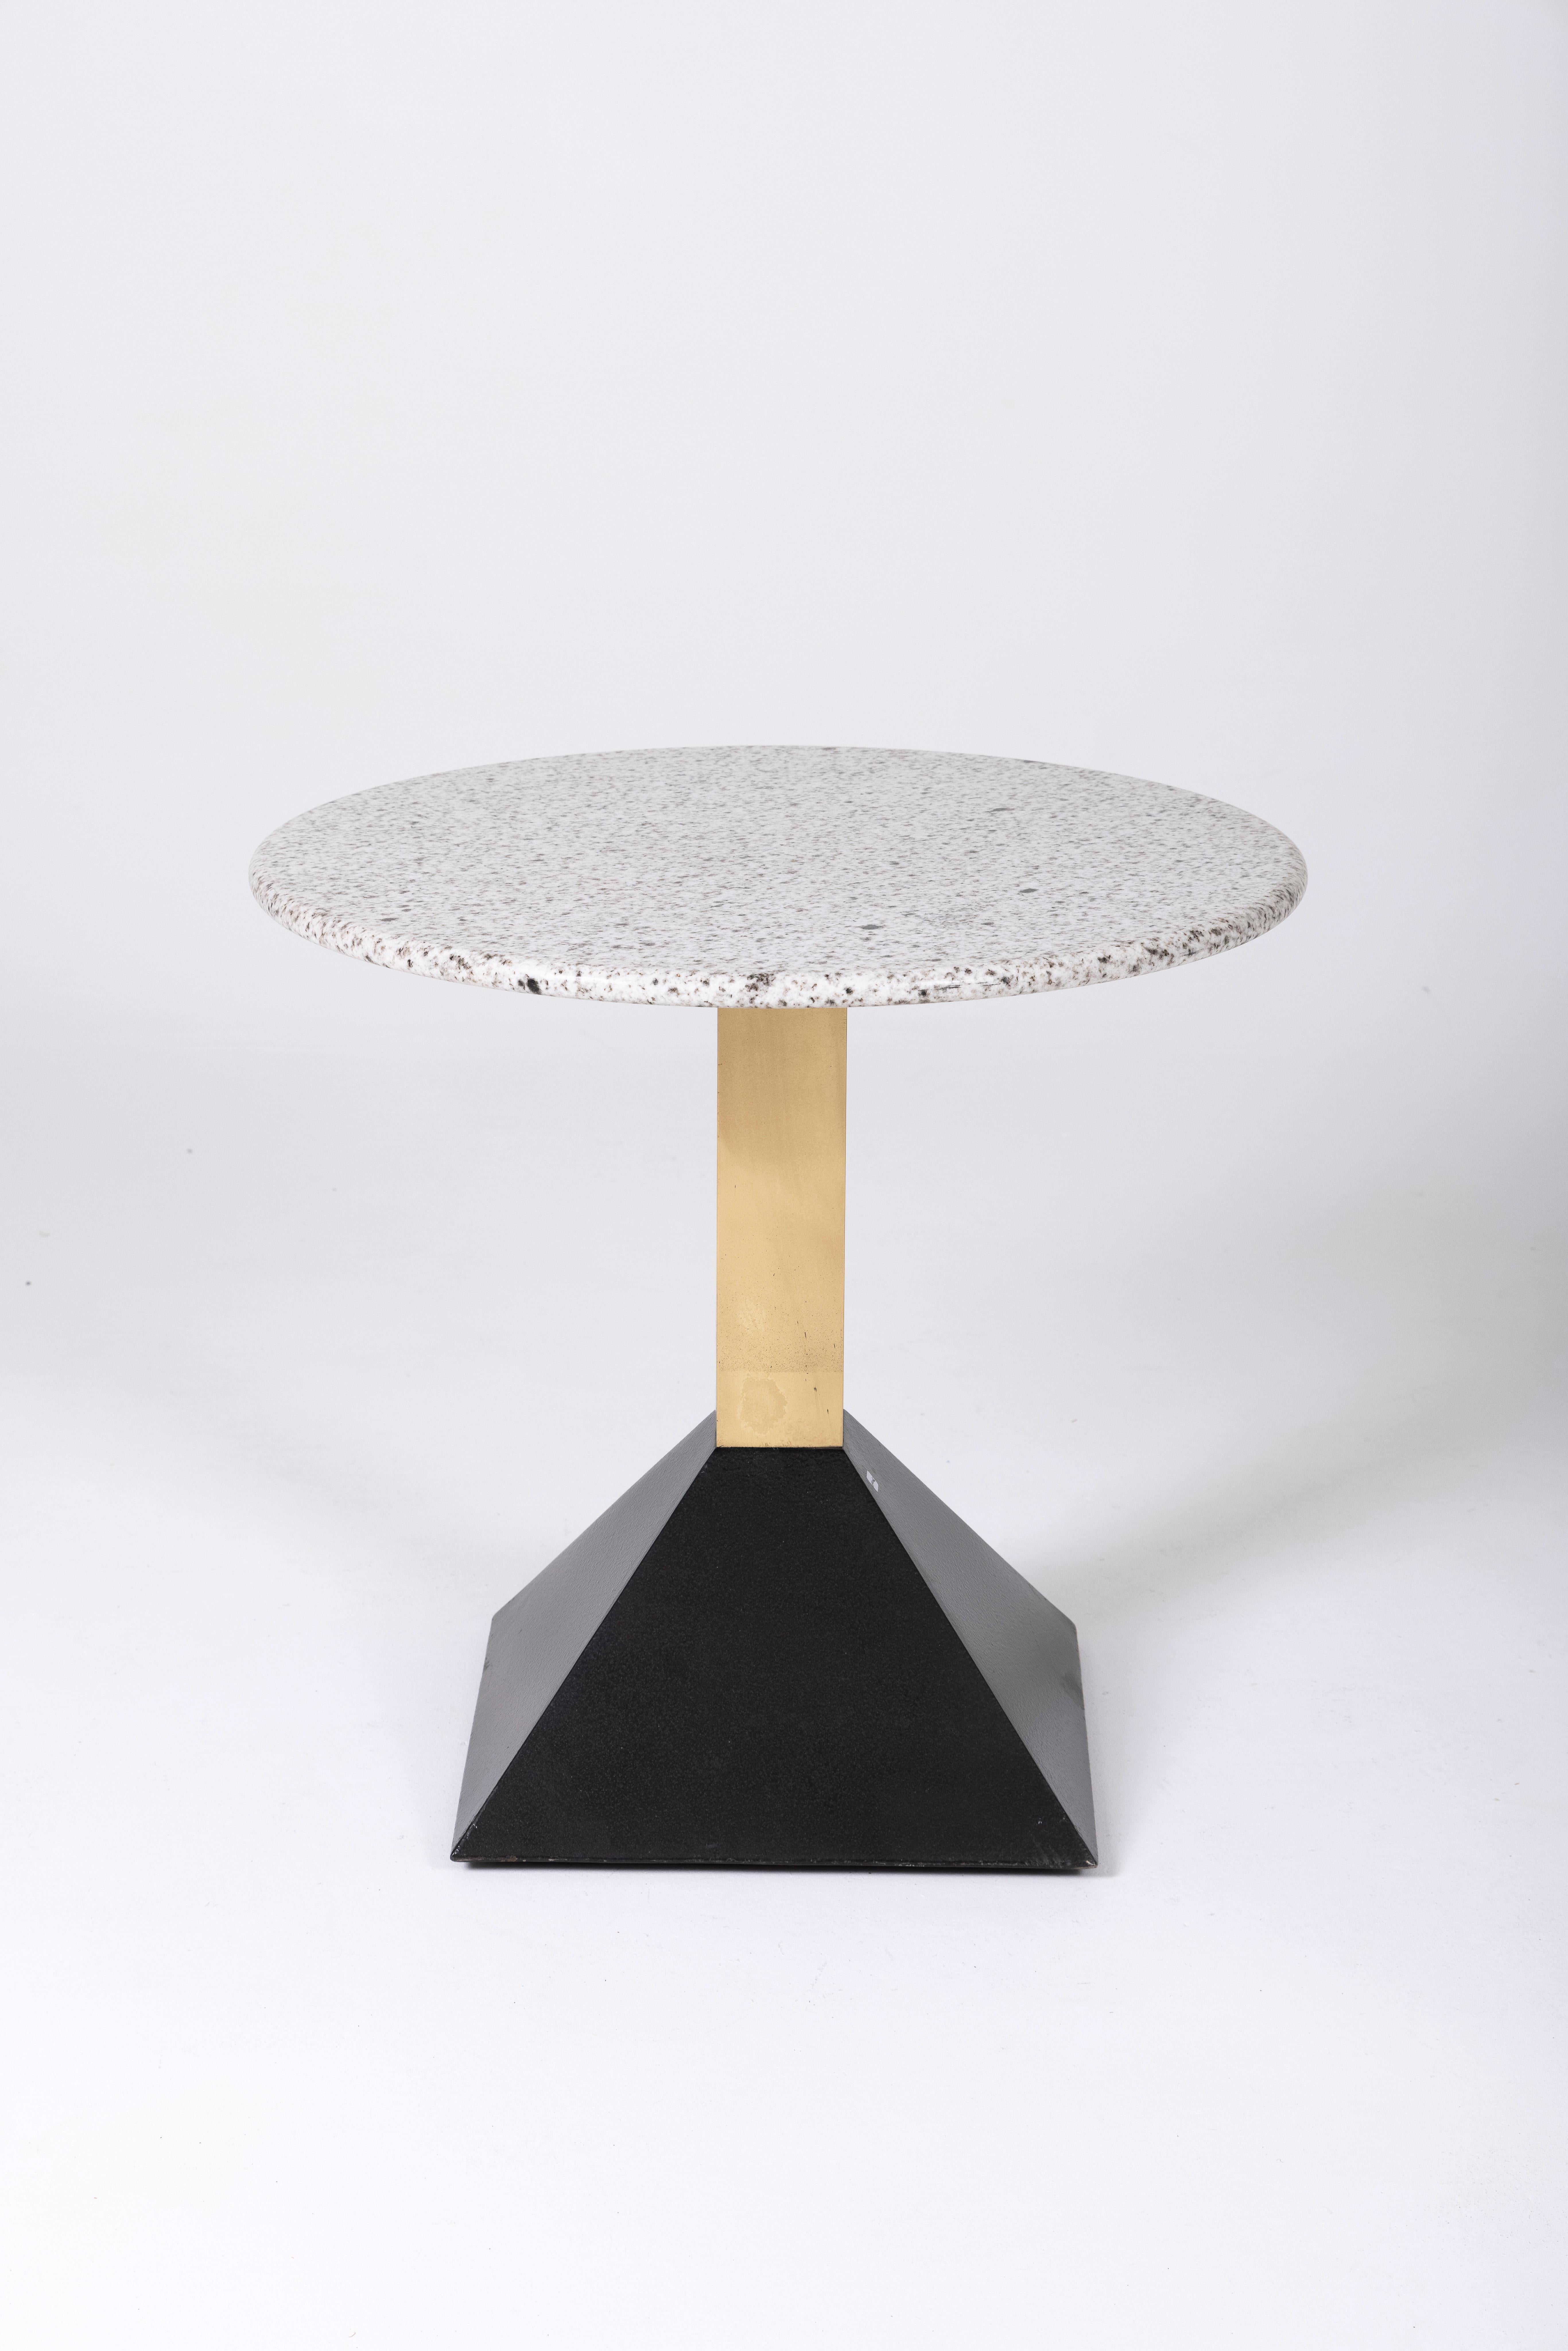 Table d'appoint en terrazzo et laiton des années 1980. Le plateau de la table est en marbre blanc et gris, tandis que la base est fabriquée en métal laqué noir et en laiton. Ce guéridon s'harmonise avec les meubles de style Memphis.
DV148